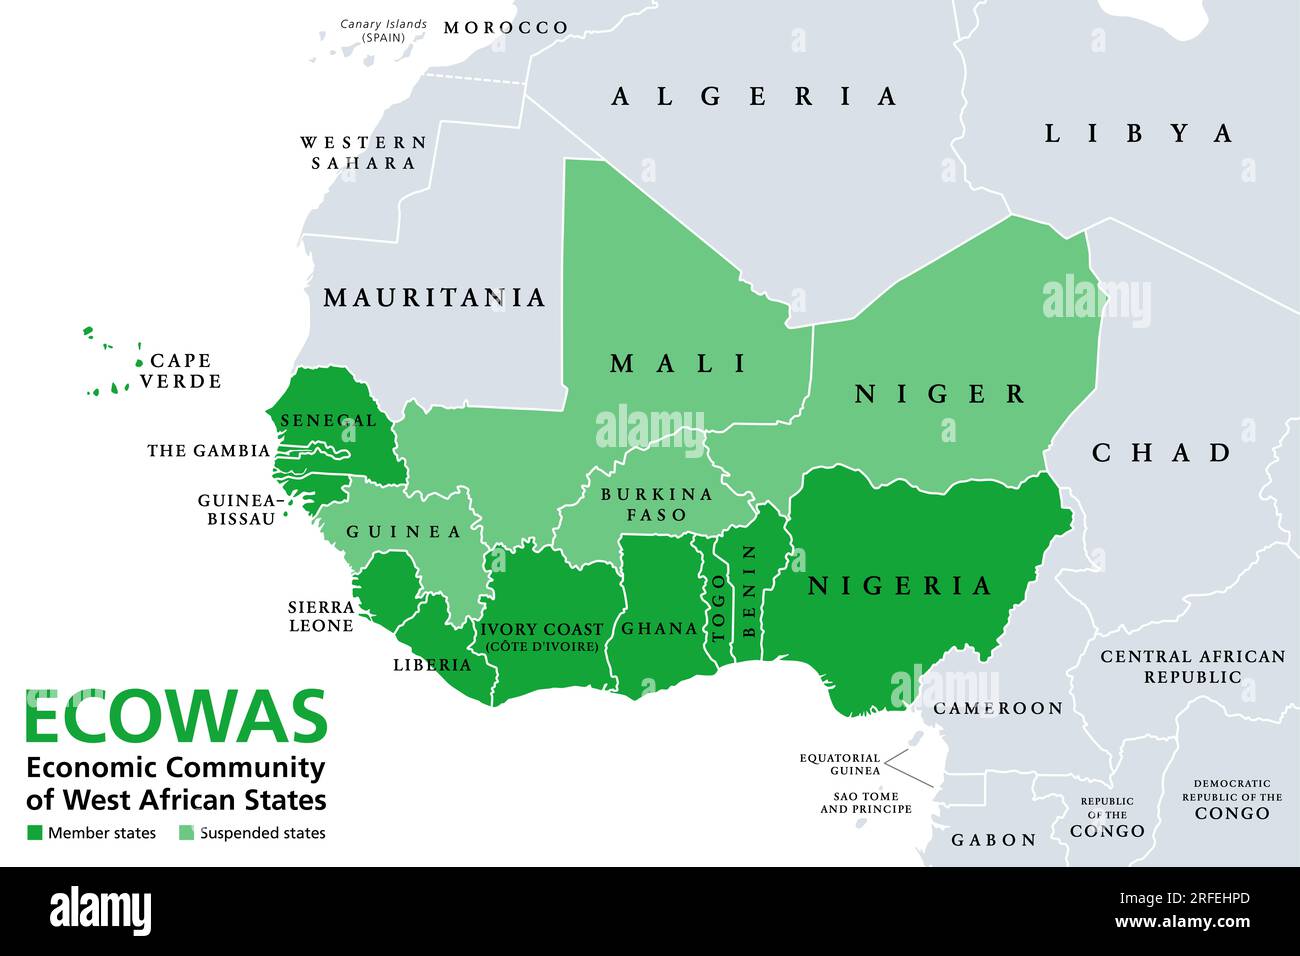 CEDEAO, Communauté économique des États de l'Afrique de l'Ouest, États membres, carte politique. Aussi connue sous le nom de CEDEAO, est une Union politique et économique régionale. Banque D'Images